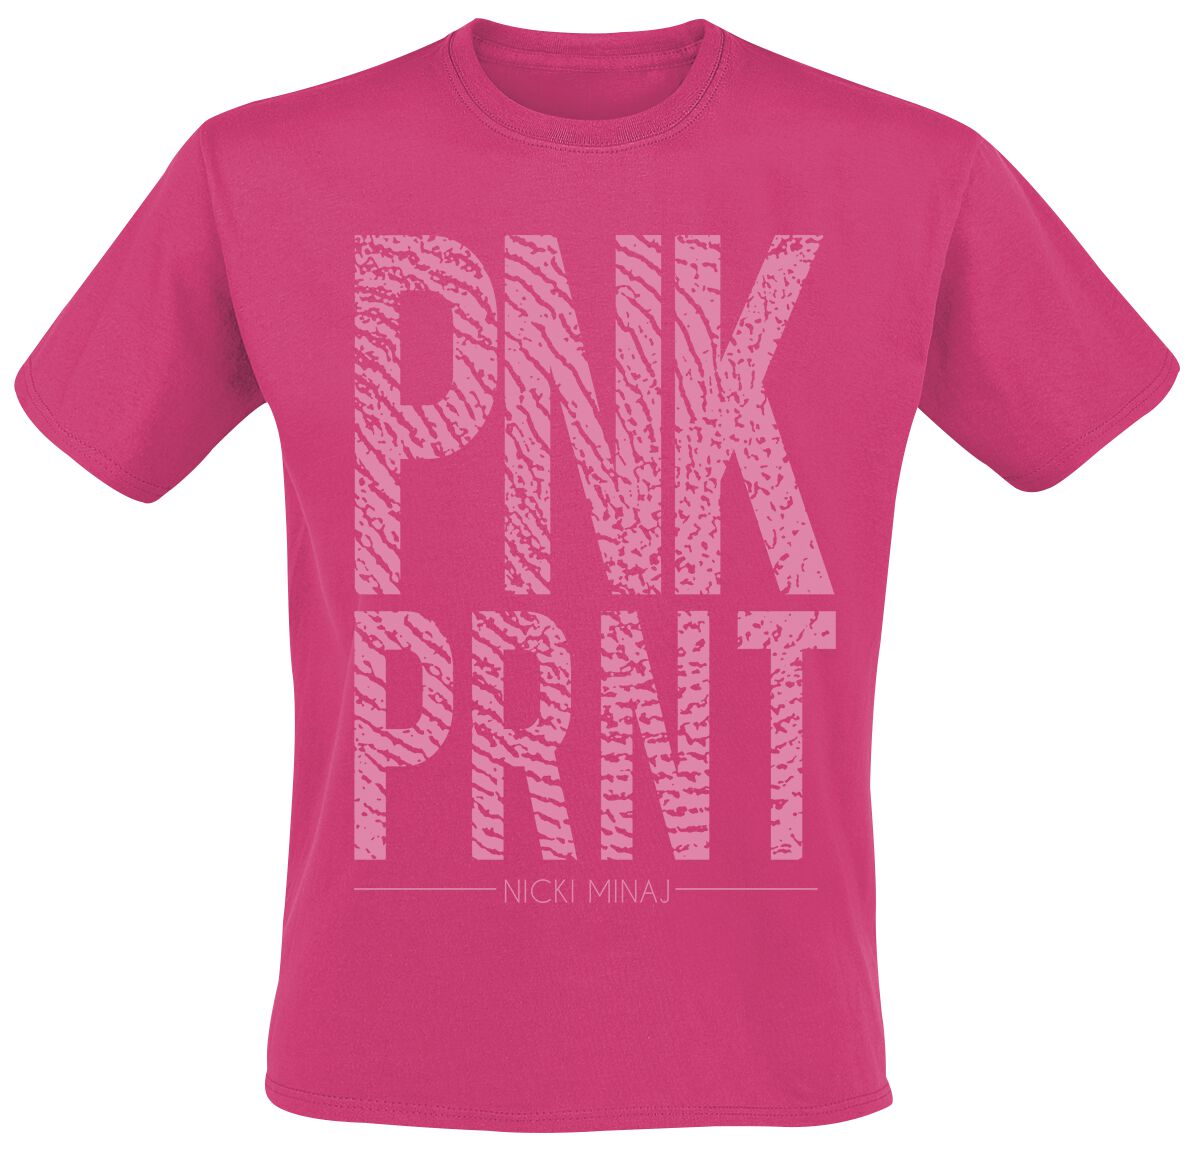 Nicki Minaj T-Shirt - Pnk Prnt - S bis XXL - für Männer - Größe S - pink  - Lizenziertes Merchandise!